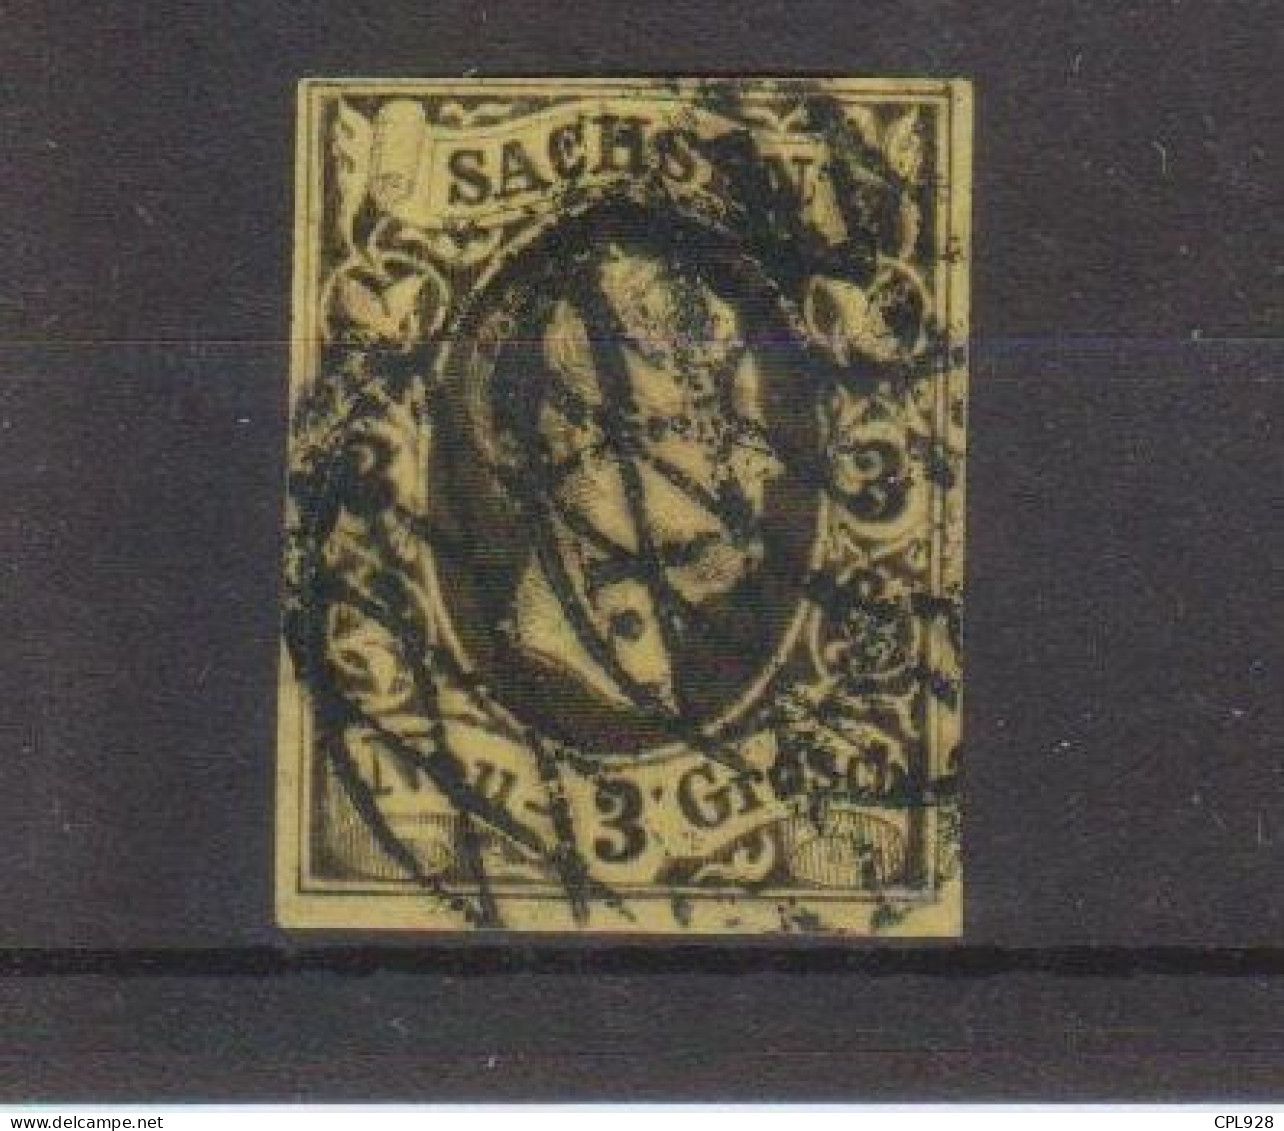 Saxe N°5 - Saxony